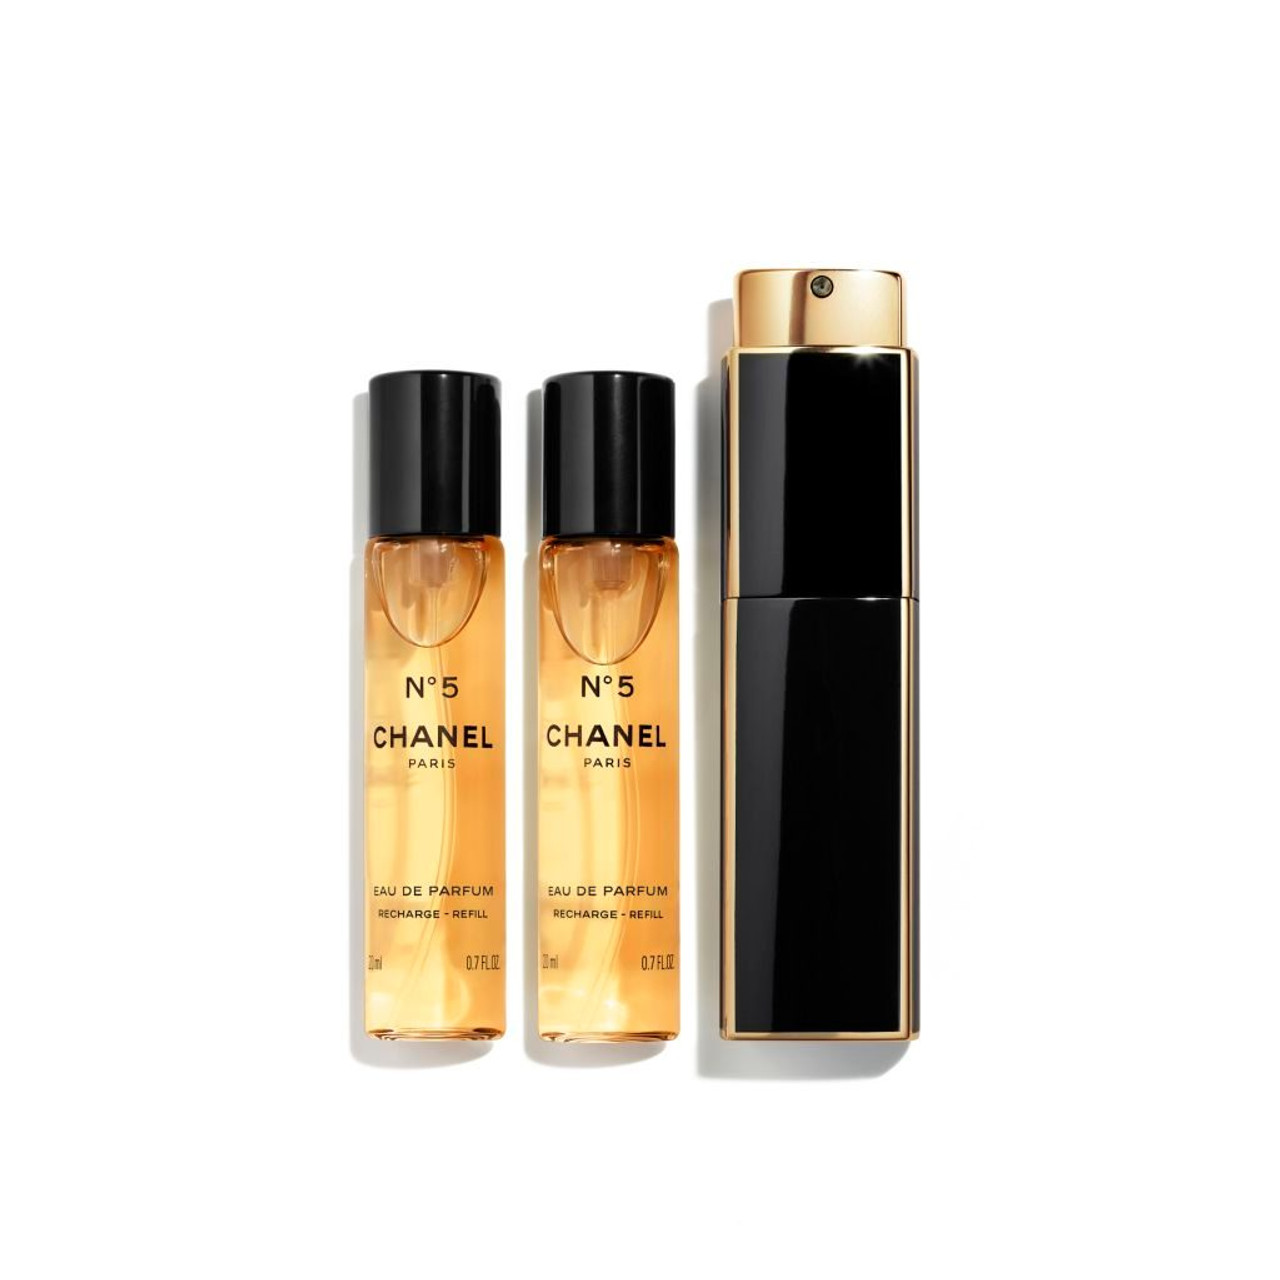 Premium Perfume and Deodorant Sprays for Men